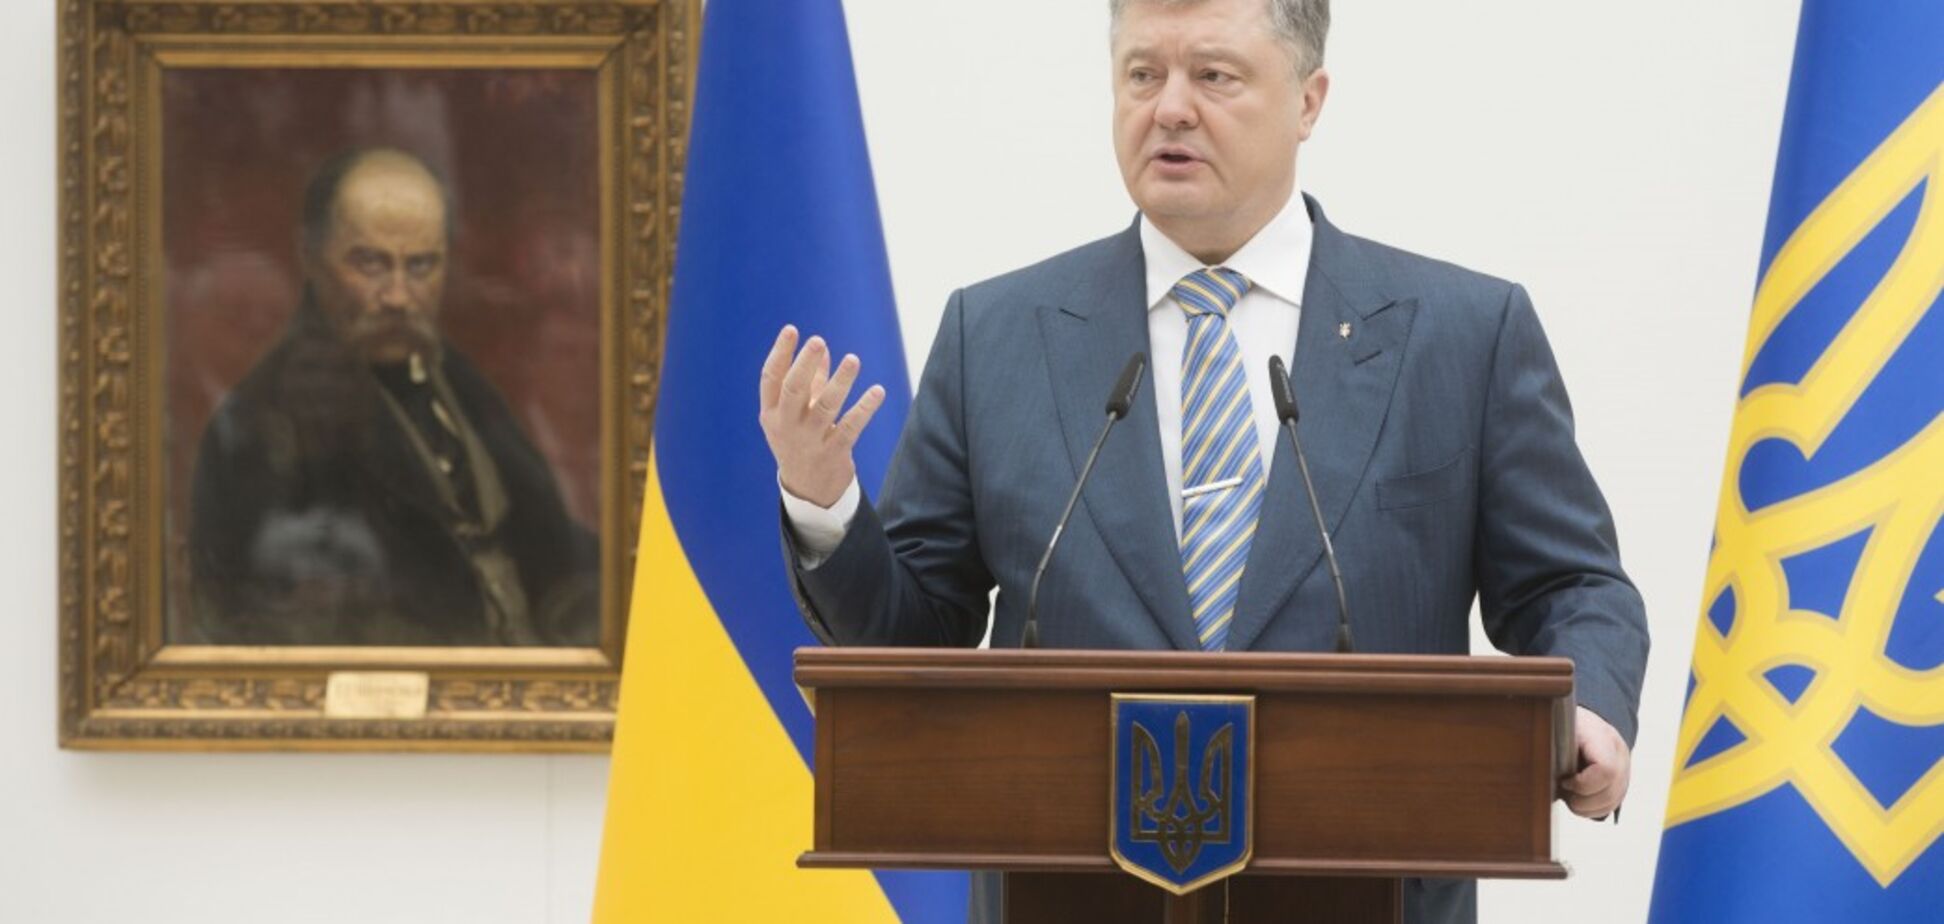 Порошенко анонсировал десятилетие поддержки украинского языка